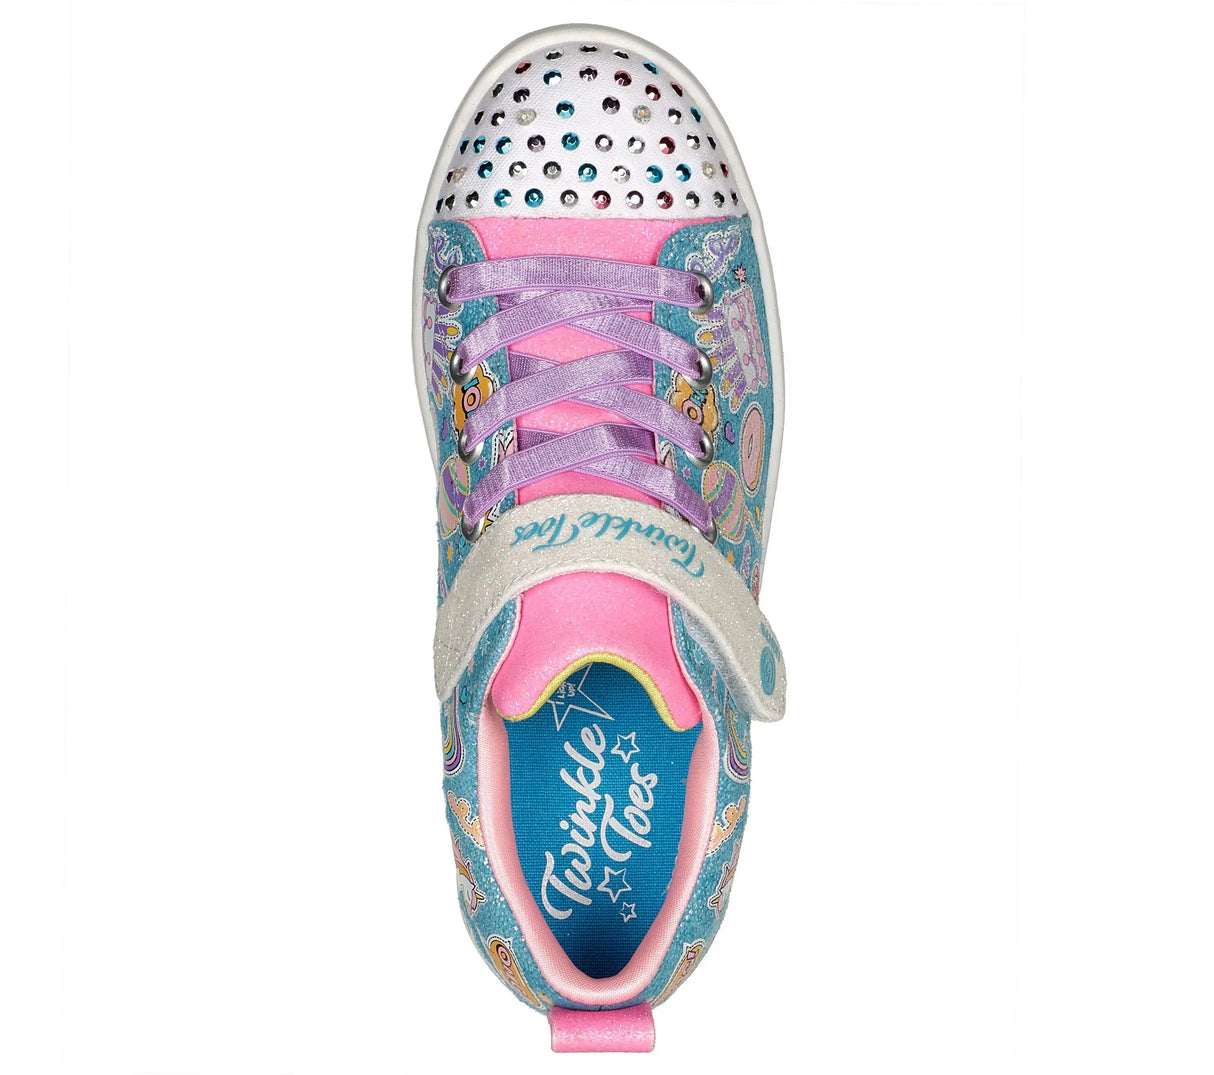 Youth Girls' Twinkle Toes Sparkle Rayz Sneaker - Unicorn Party | Skechers - Skechers